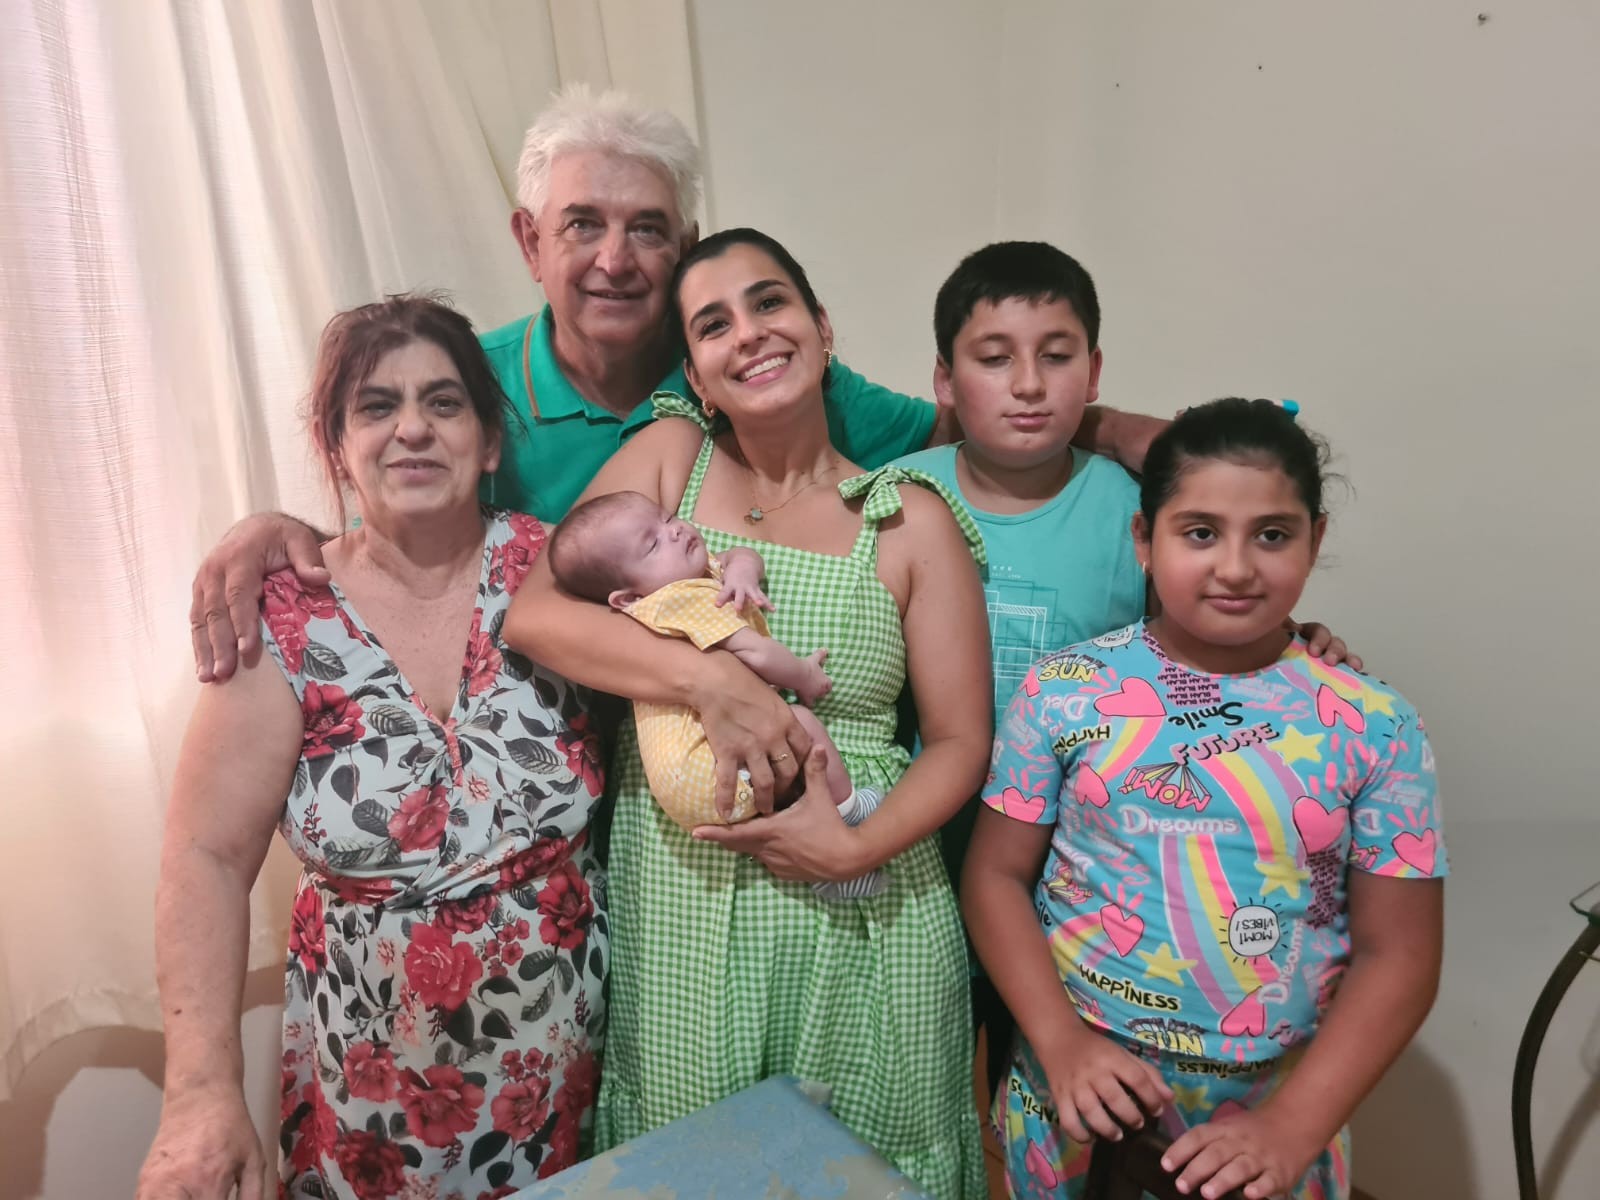 Avó fala da experiência de ser mãe novamente aos 60 anos: 'Amor para todos'